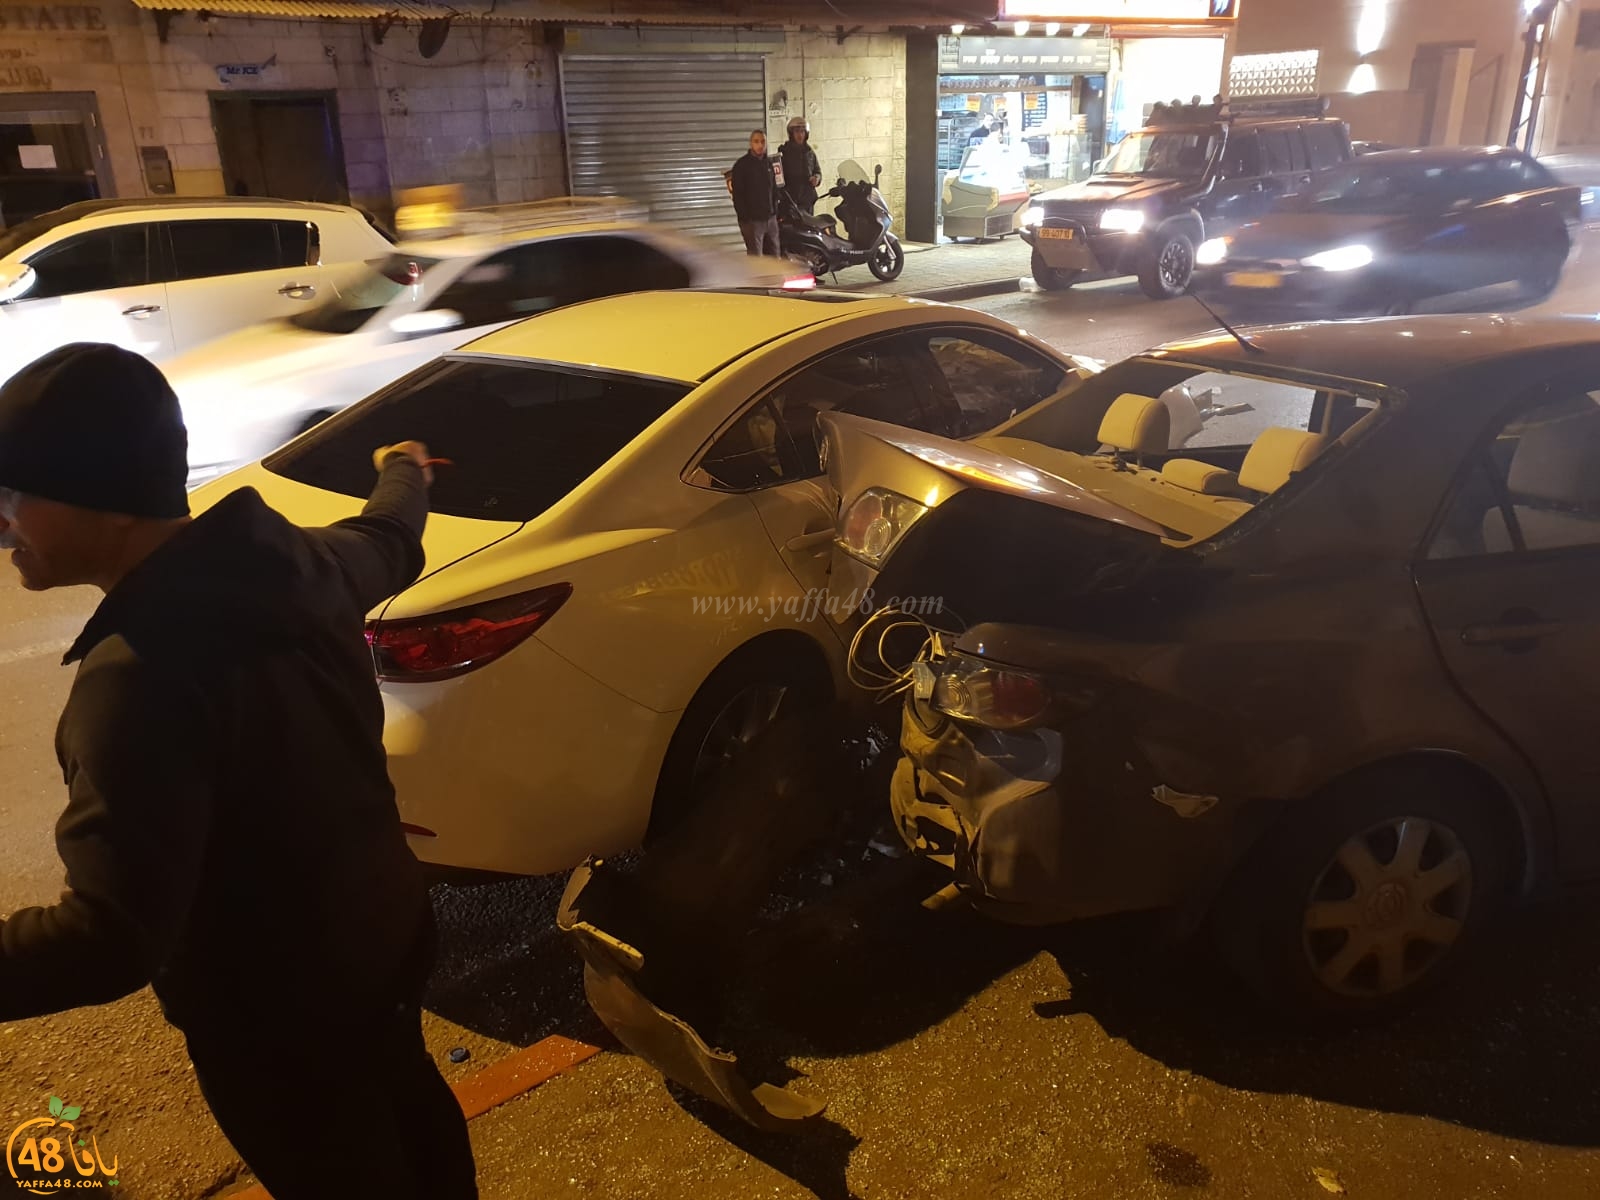  بالصور: سائق يفقد السيطرة على مركبته ويصطدم بعدة مركبات بيافا